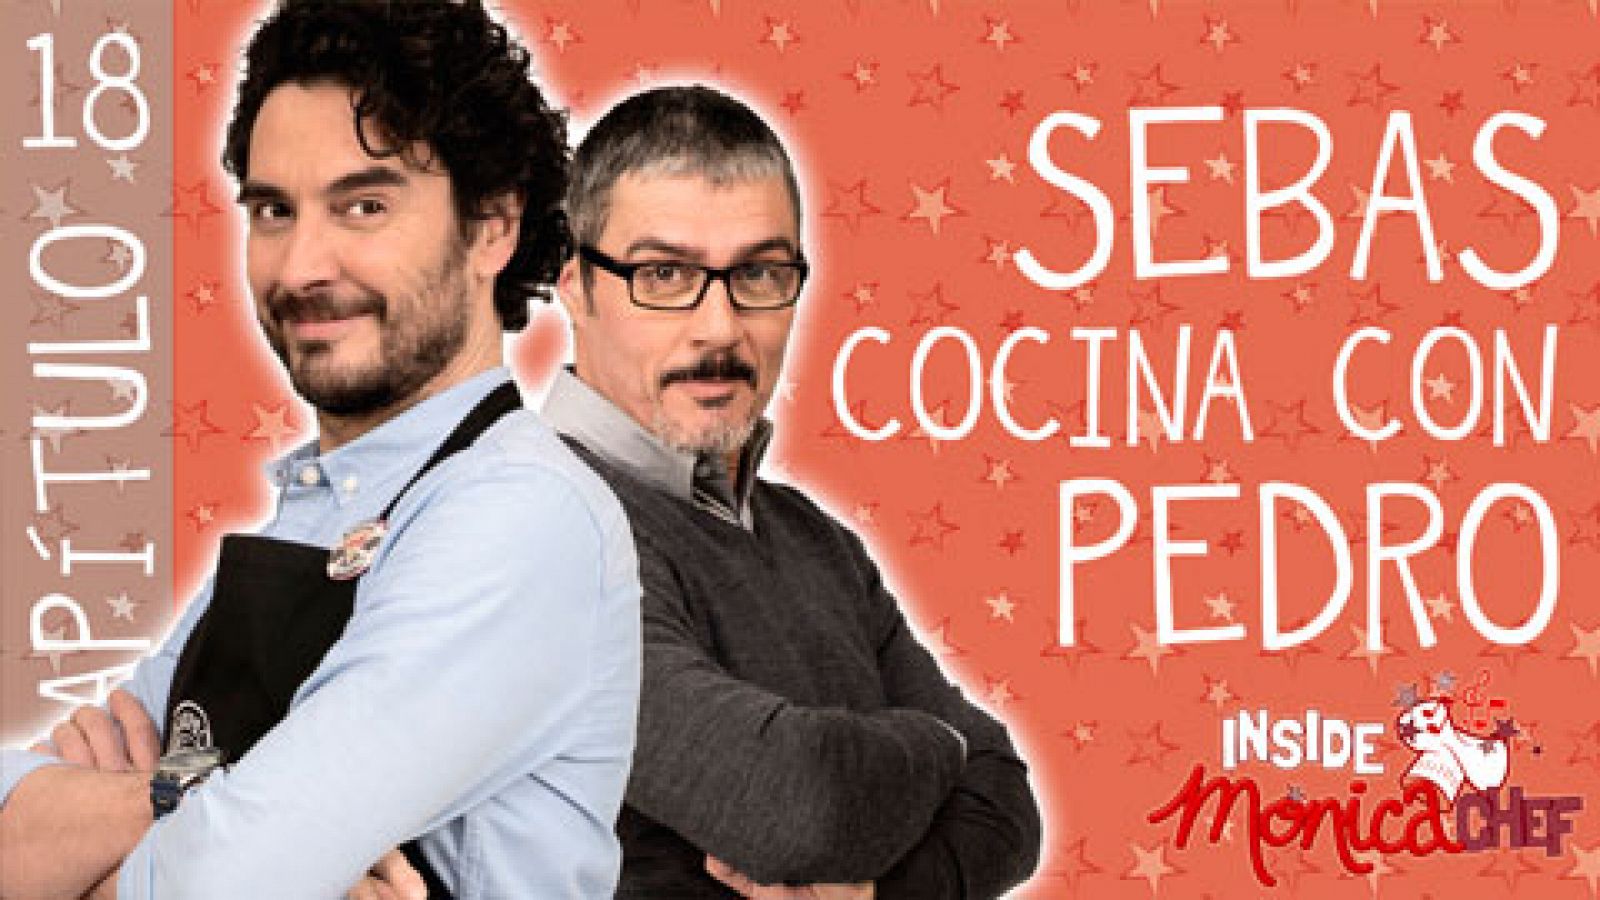 Sin programa: Inside Mónica Chef 18 - Sebas cocina con Pedro | RTVE Play